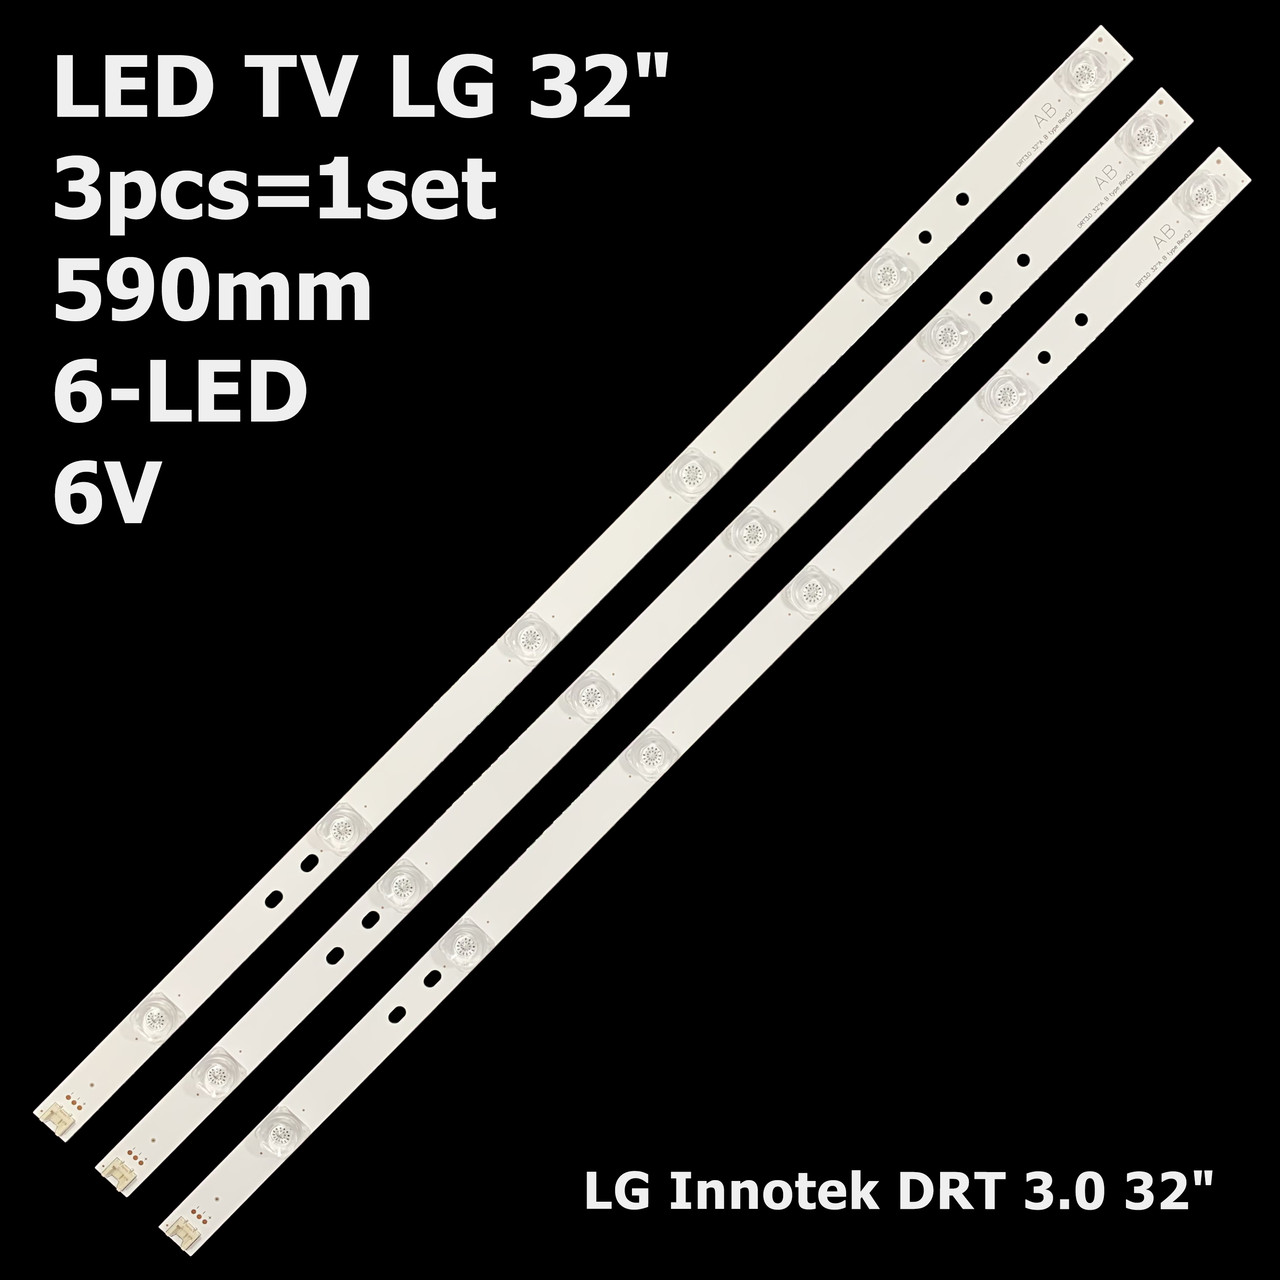 LED підсвітка LG Innotek DRT 3.0 32" 590mm 6-led 6V 6916L-1974A 6916L-1975A 6916L-1980A DRT3.0 3шт.